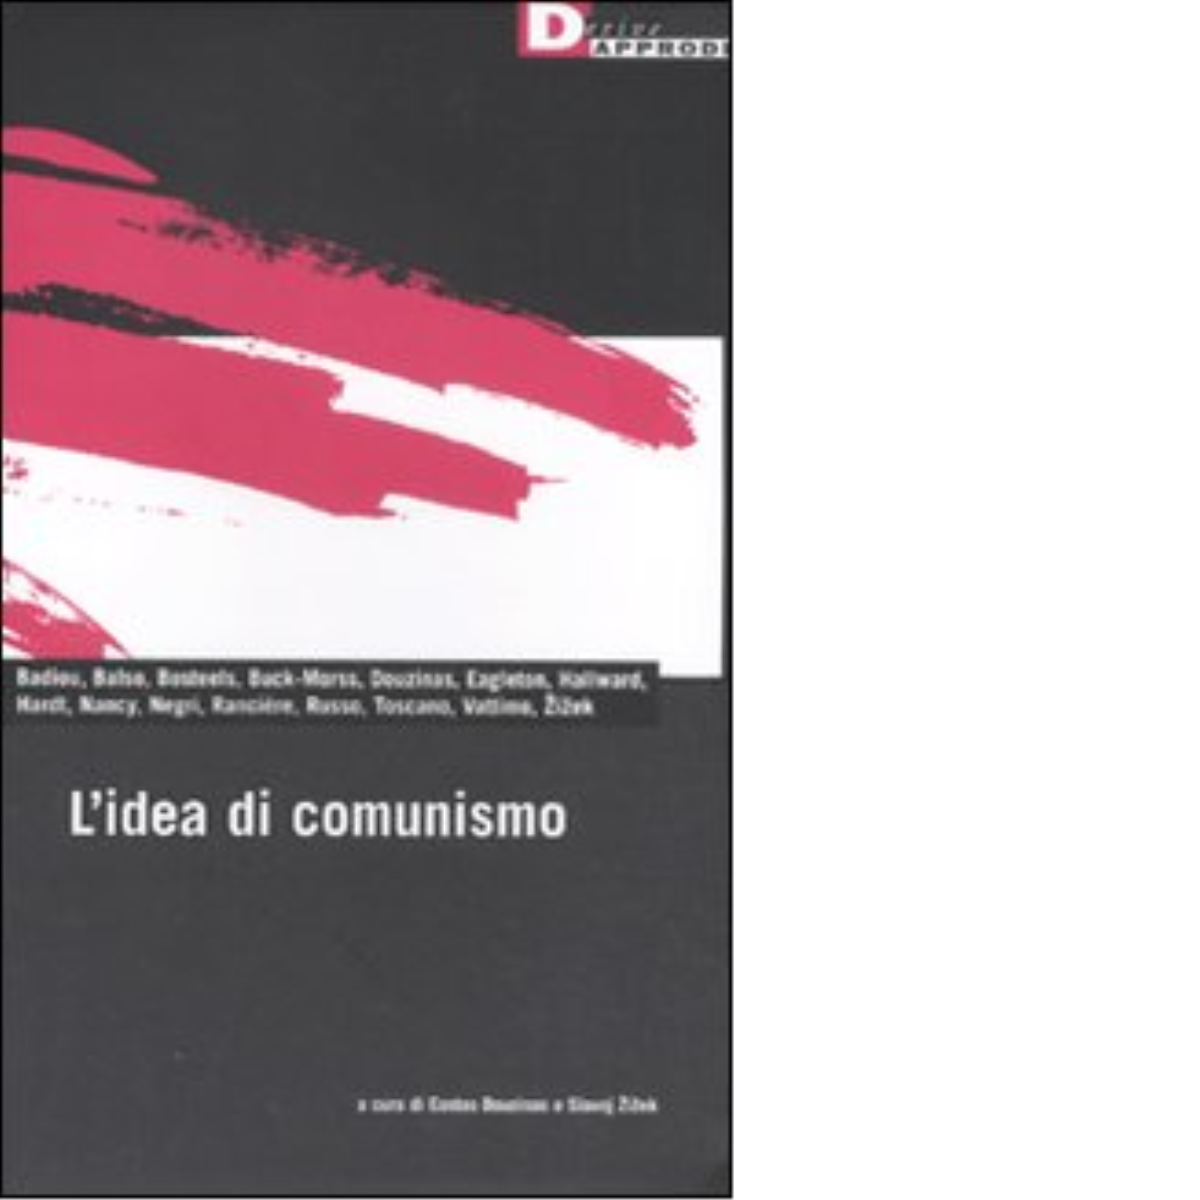 L'IDEA DI COMUNISMO di ALAIN BADIOU, SLAVOJ ZIZEK - DeriveApprodi editore,2011 libro usato